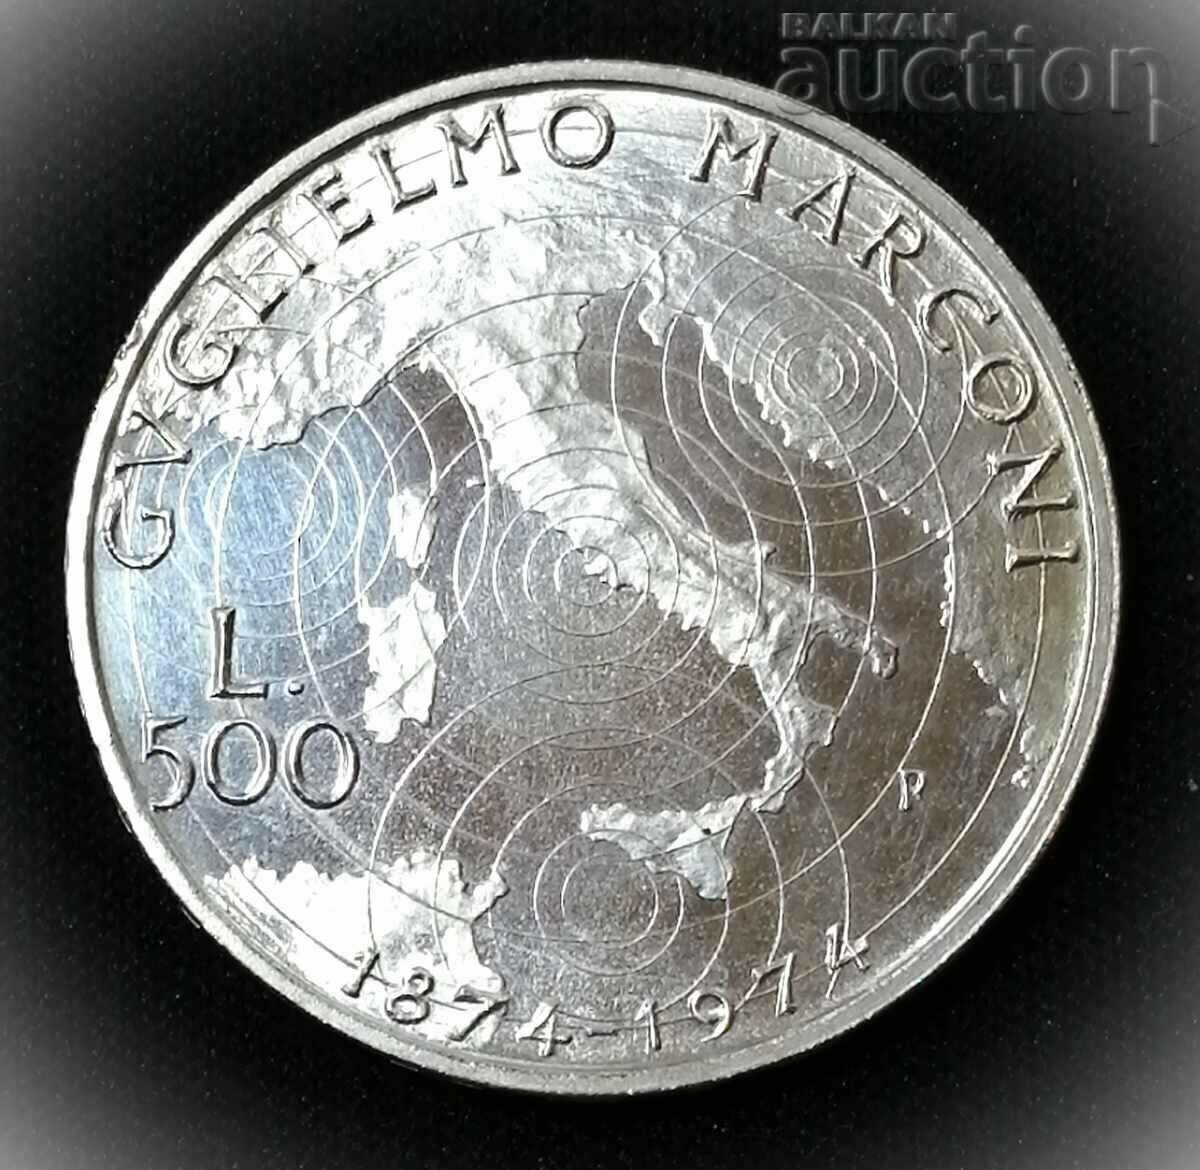 500 lire - Italia 1974 Guglielmo Marconi. Argint